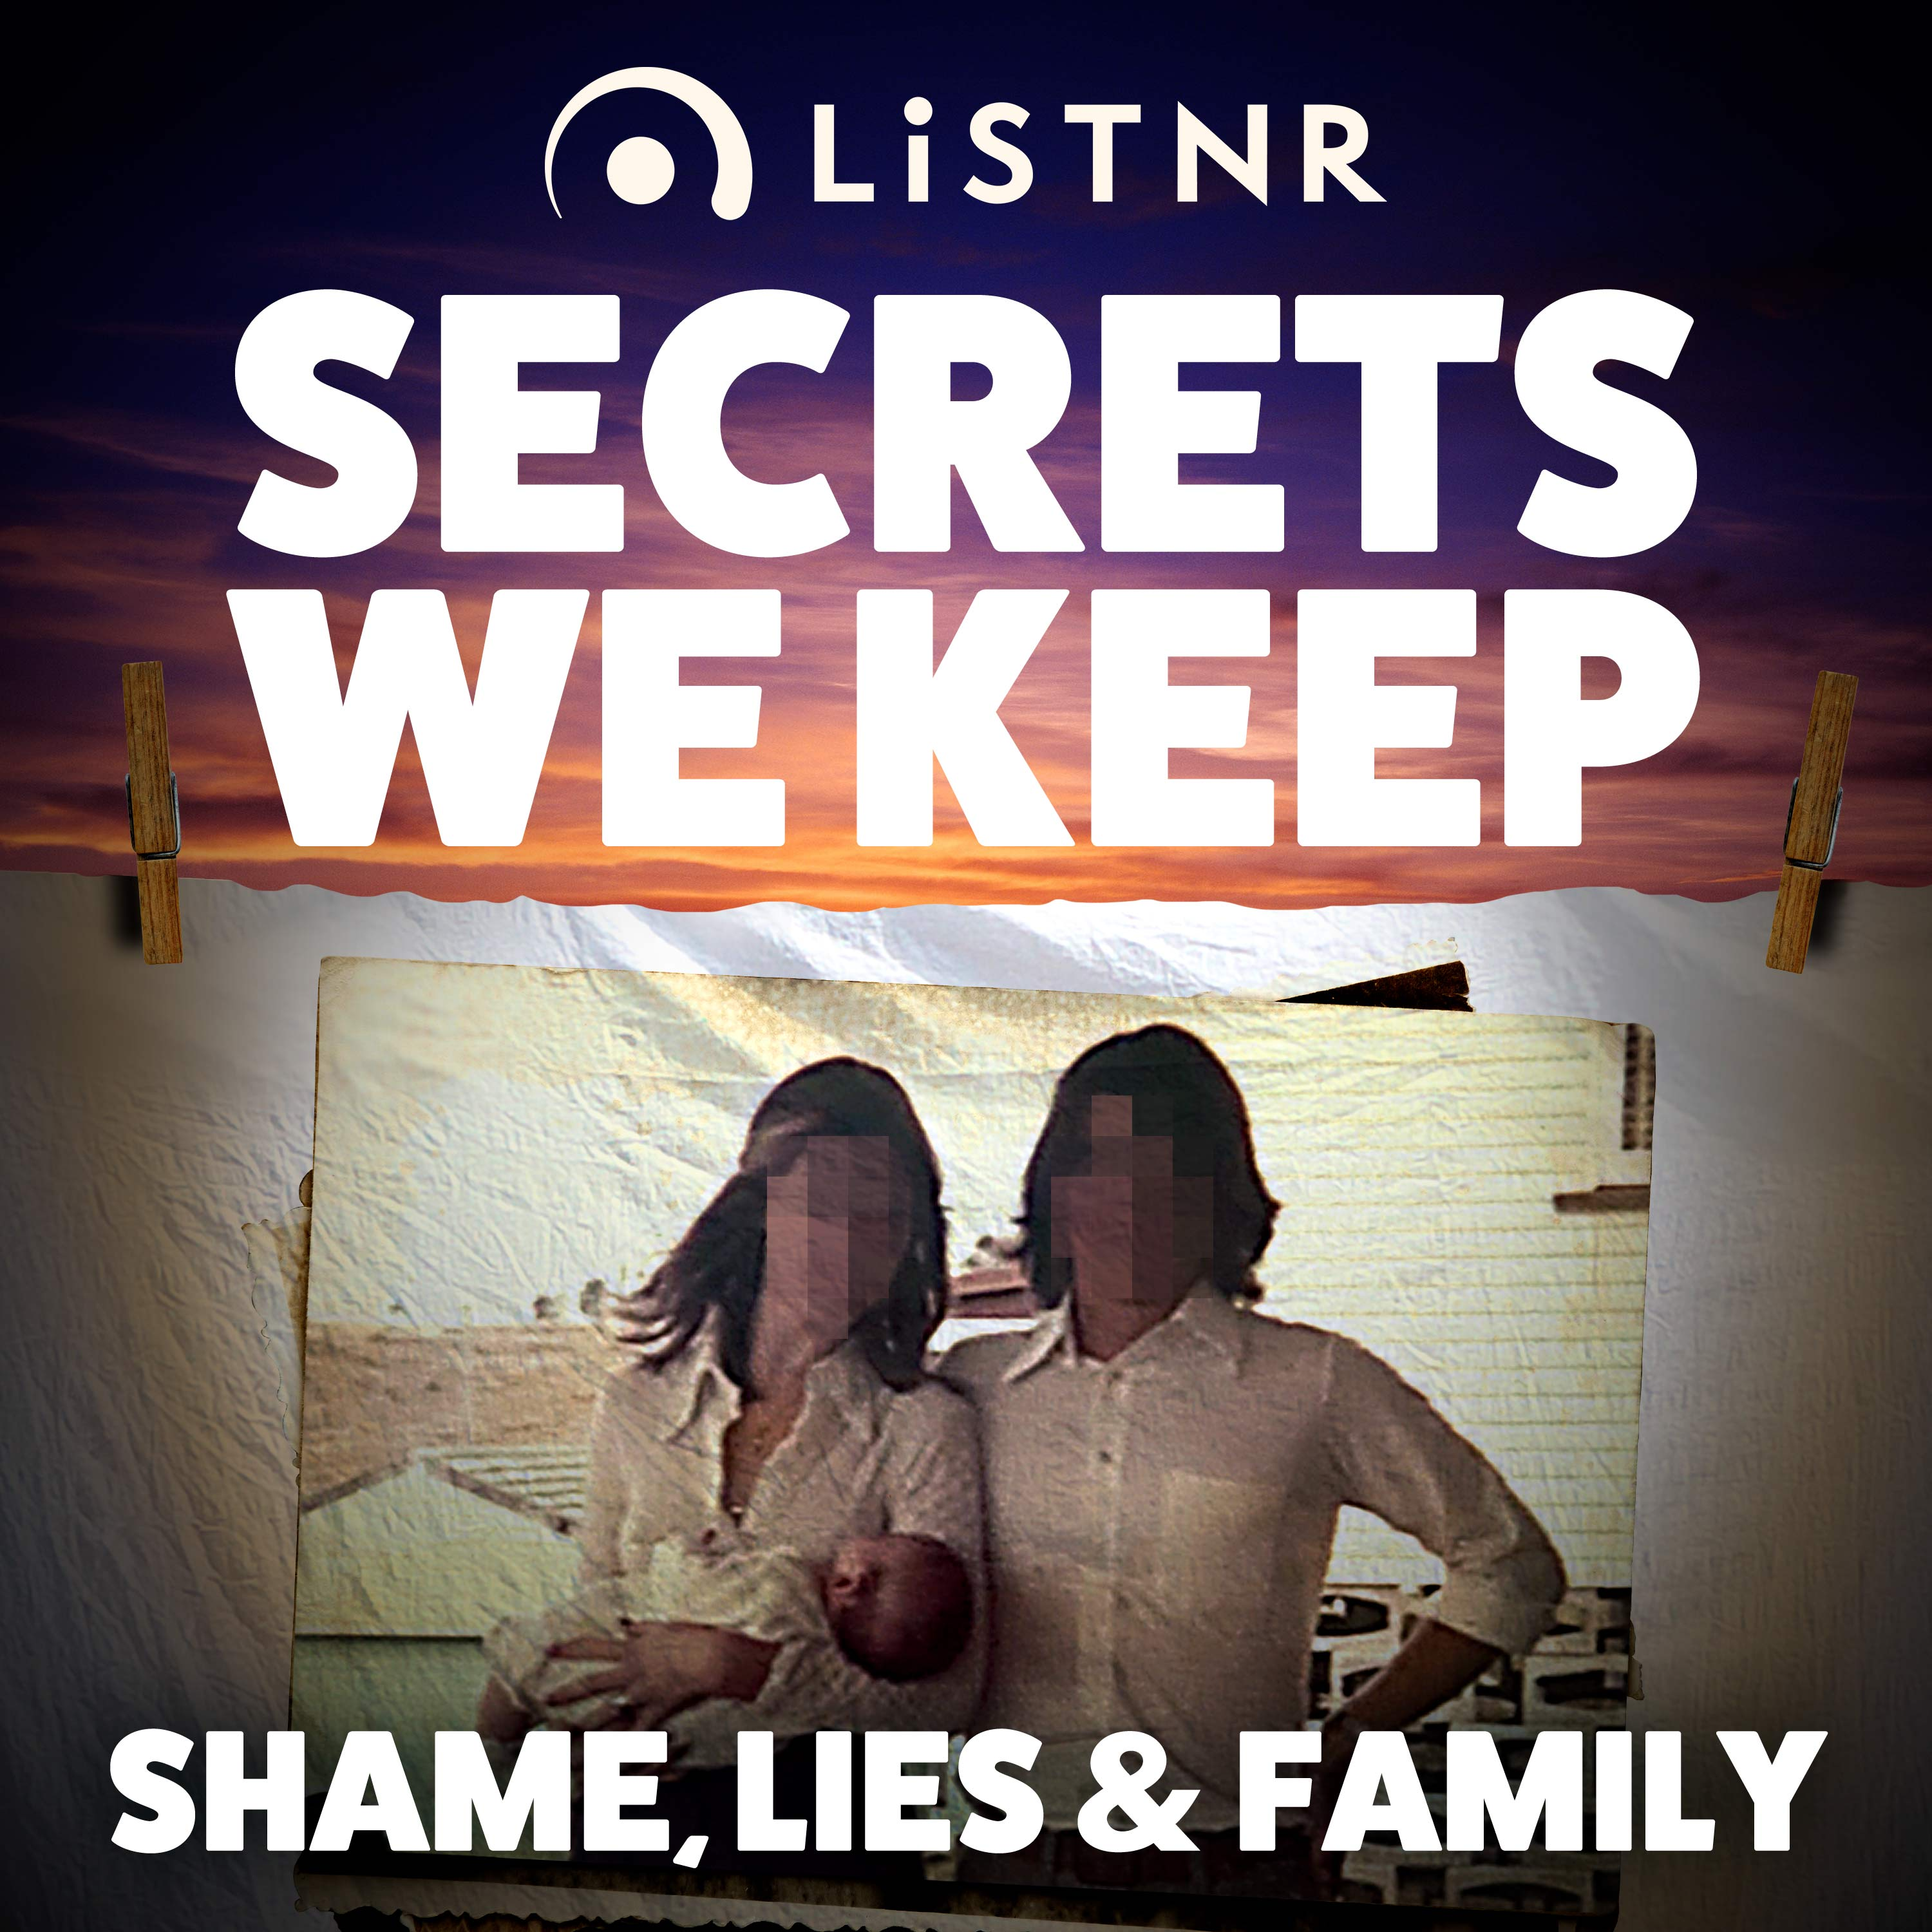 Shame, Lies & Family - Repeat or repair